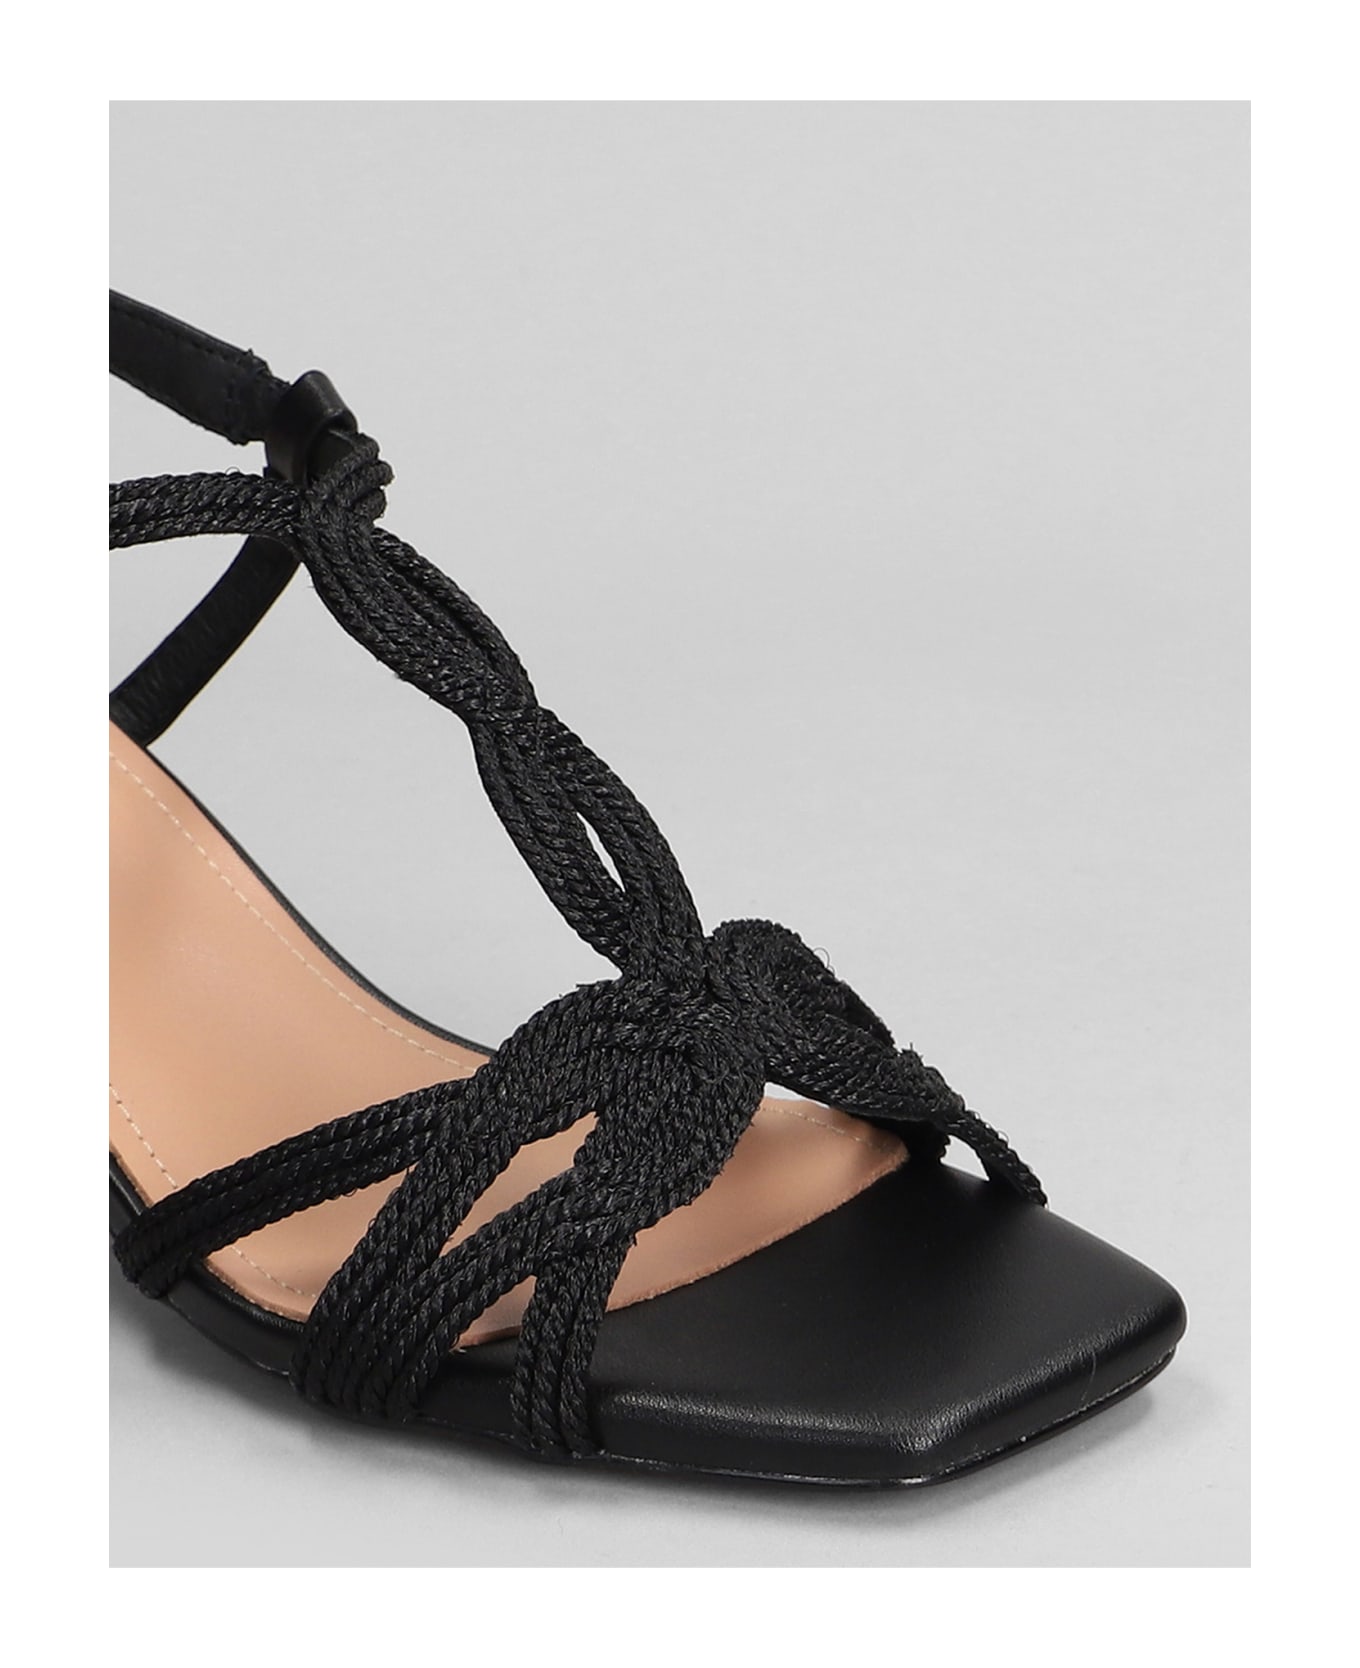 Bibi Lou Pend Sandals In Black Leather - black